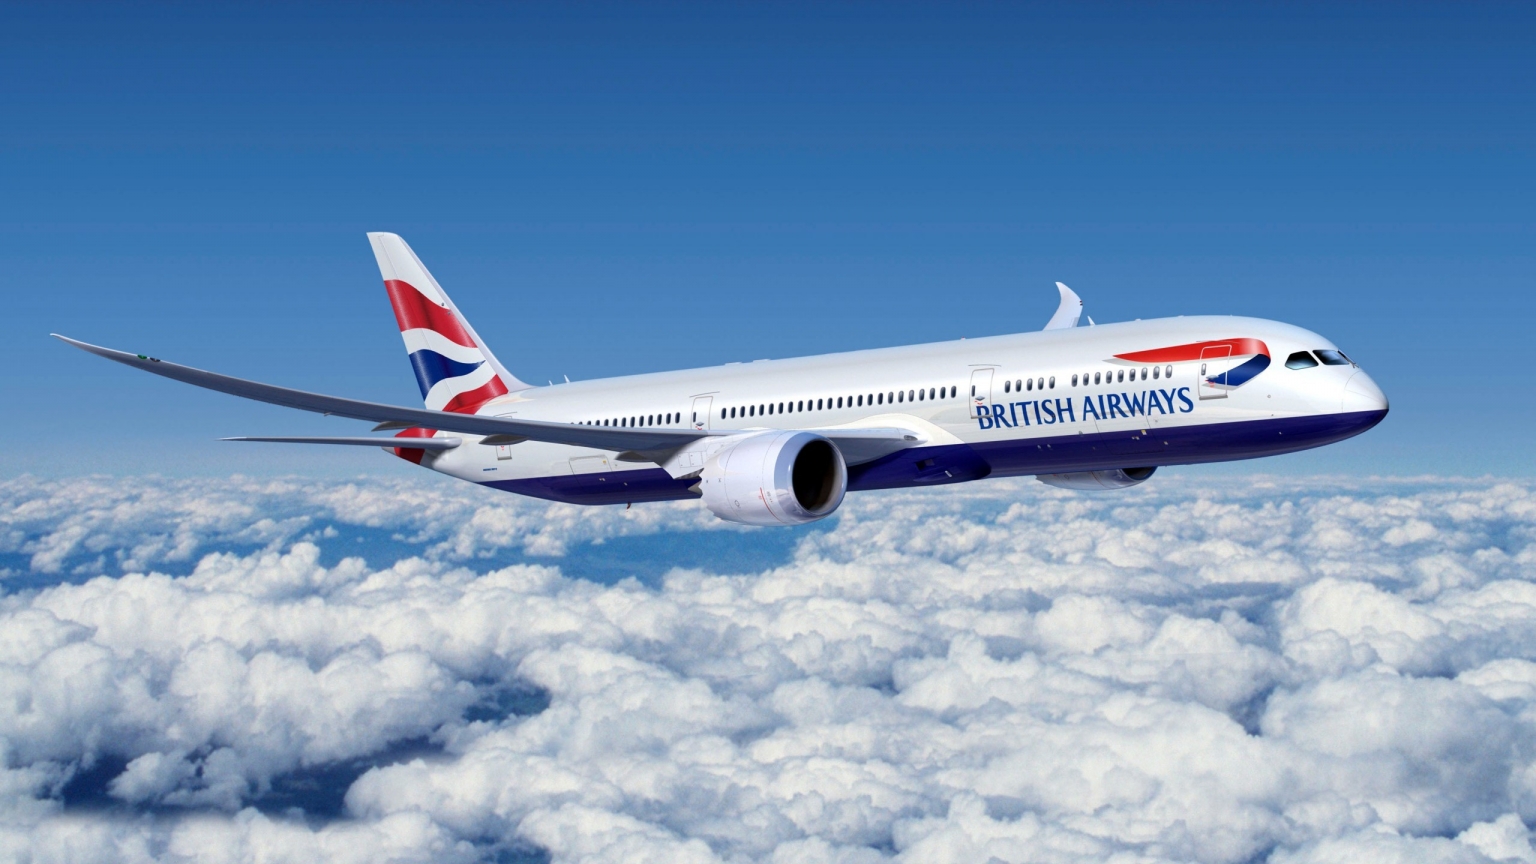 Boeing 777 British Airways for 1536 x 864 HDTV resolution